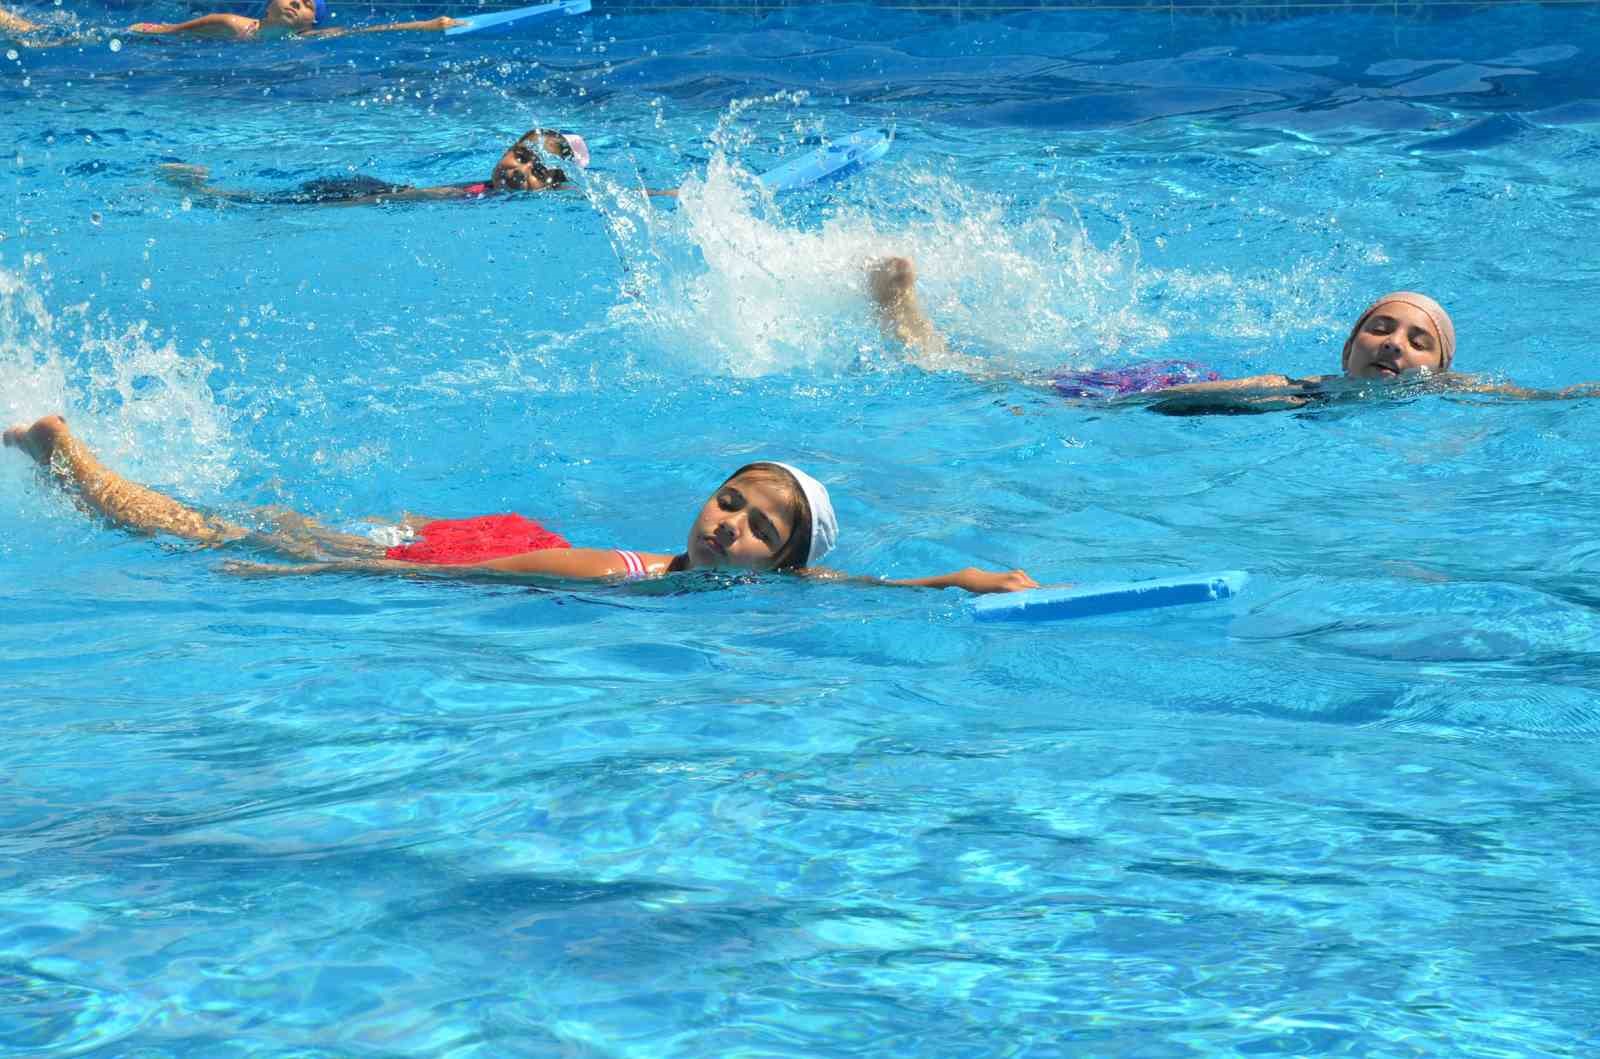 Bozüyük Belediyesi Yüzme Havuzu, yetişkinlere de hizmet vermeye başlayacak